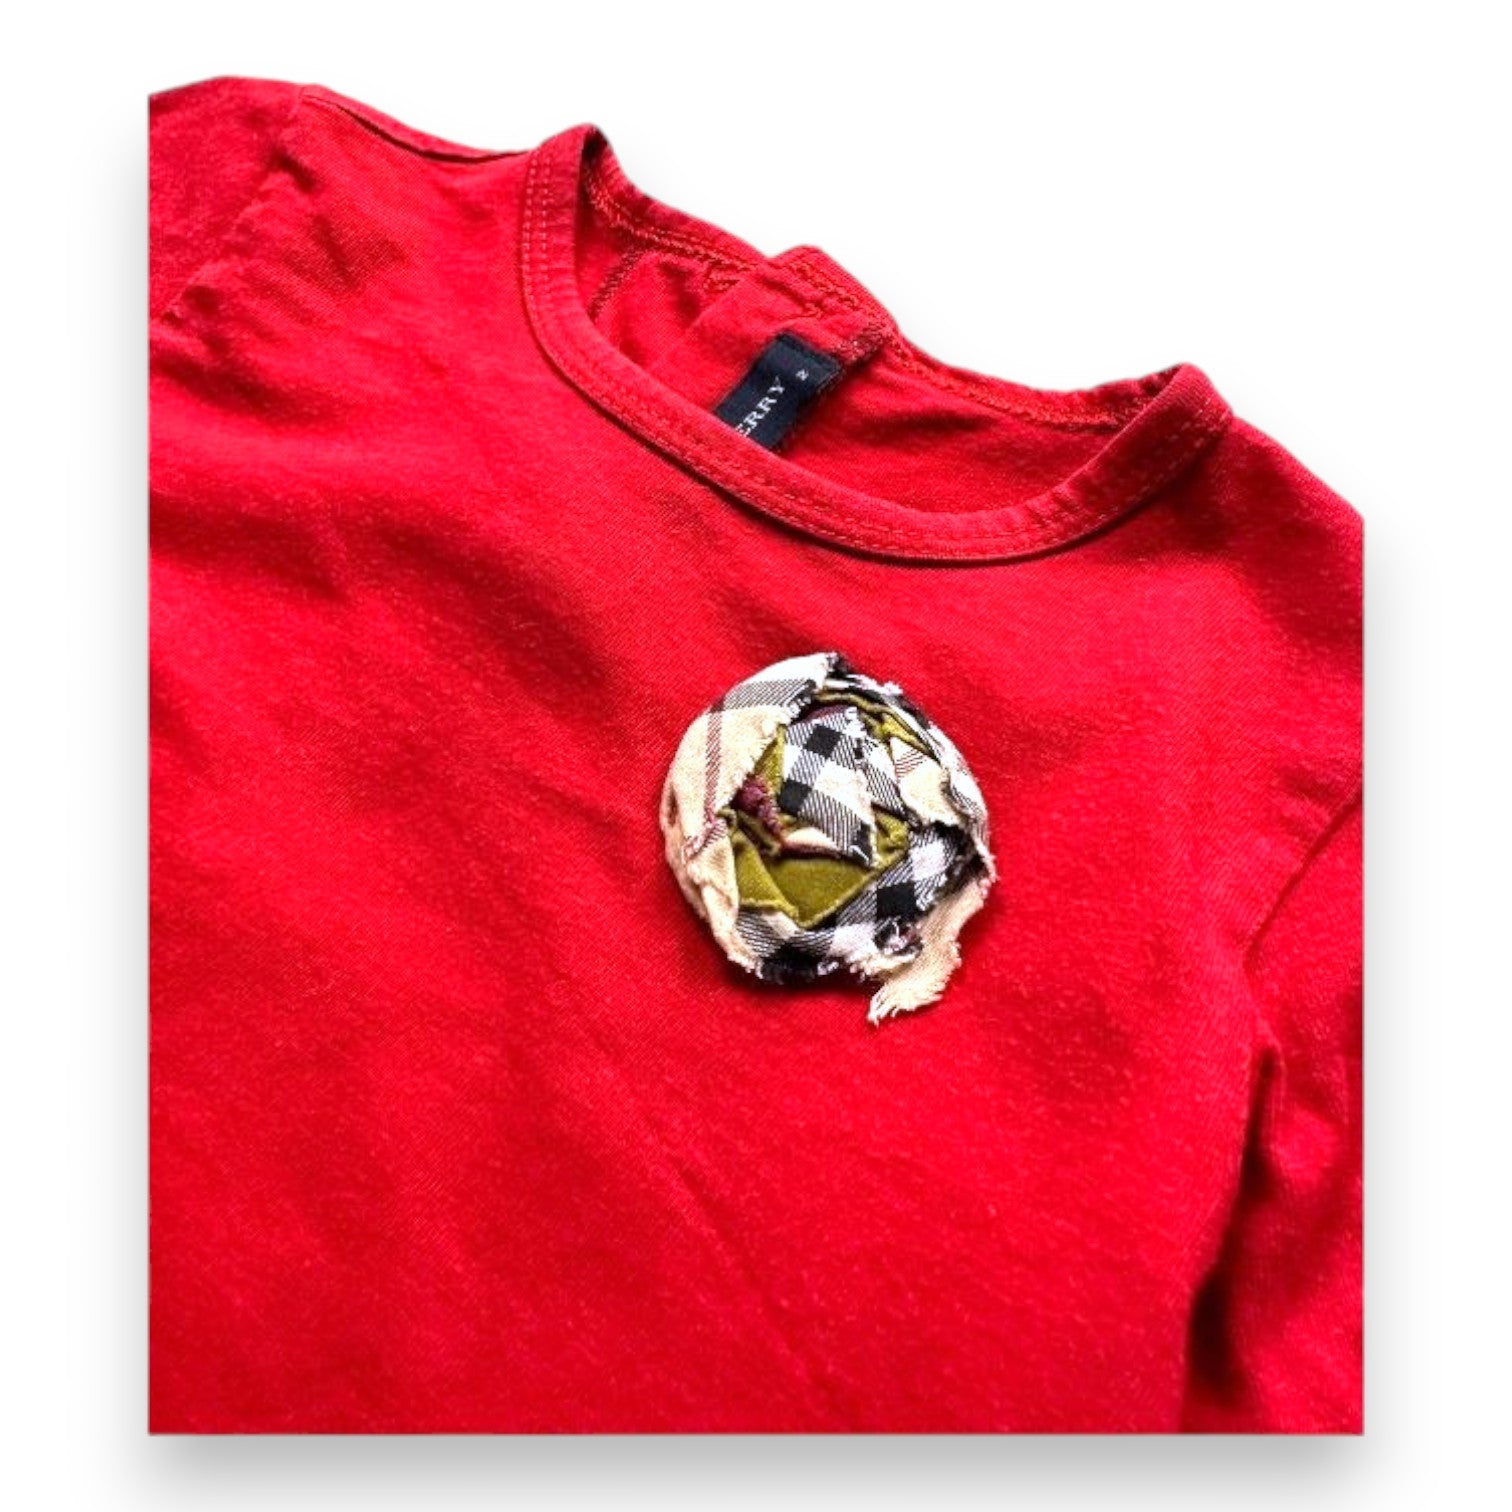 BURBERRY - T-shirt rouge à manches longues - 2 ans